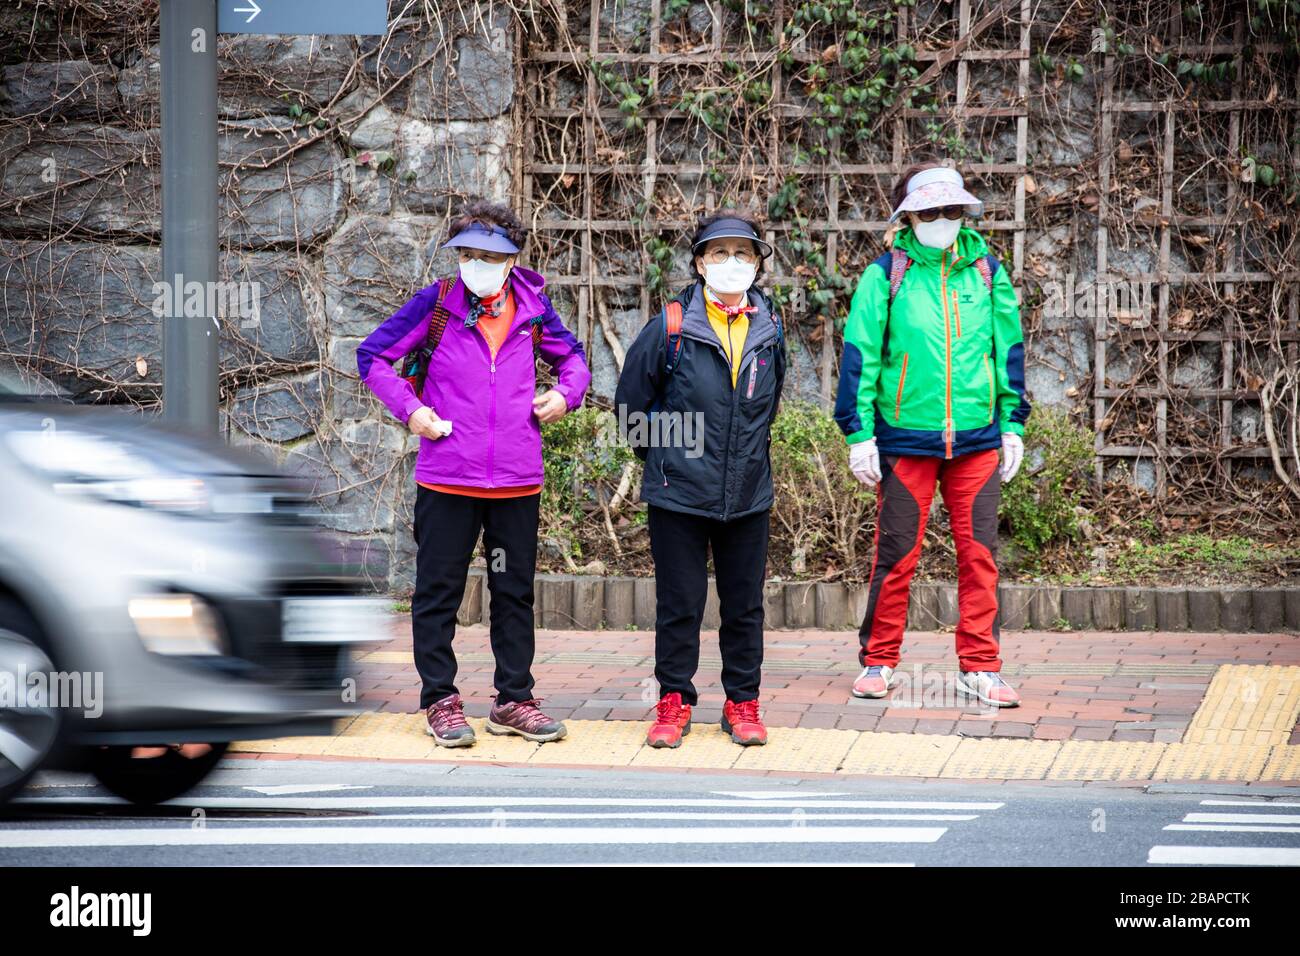 Les femmes portant des masques de protection traversant une route pendant la randonnée, pendant la pandémie de Coronavirus, Séoul, Corée du Sud Banque D'Images